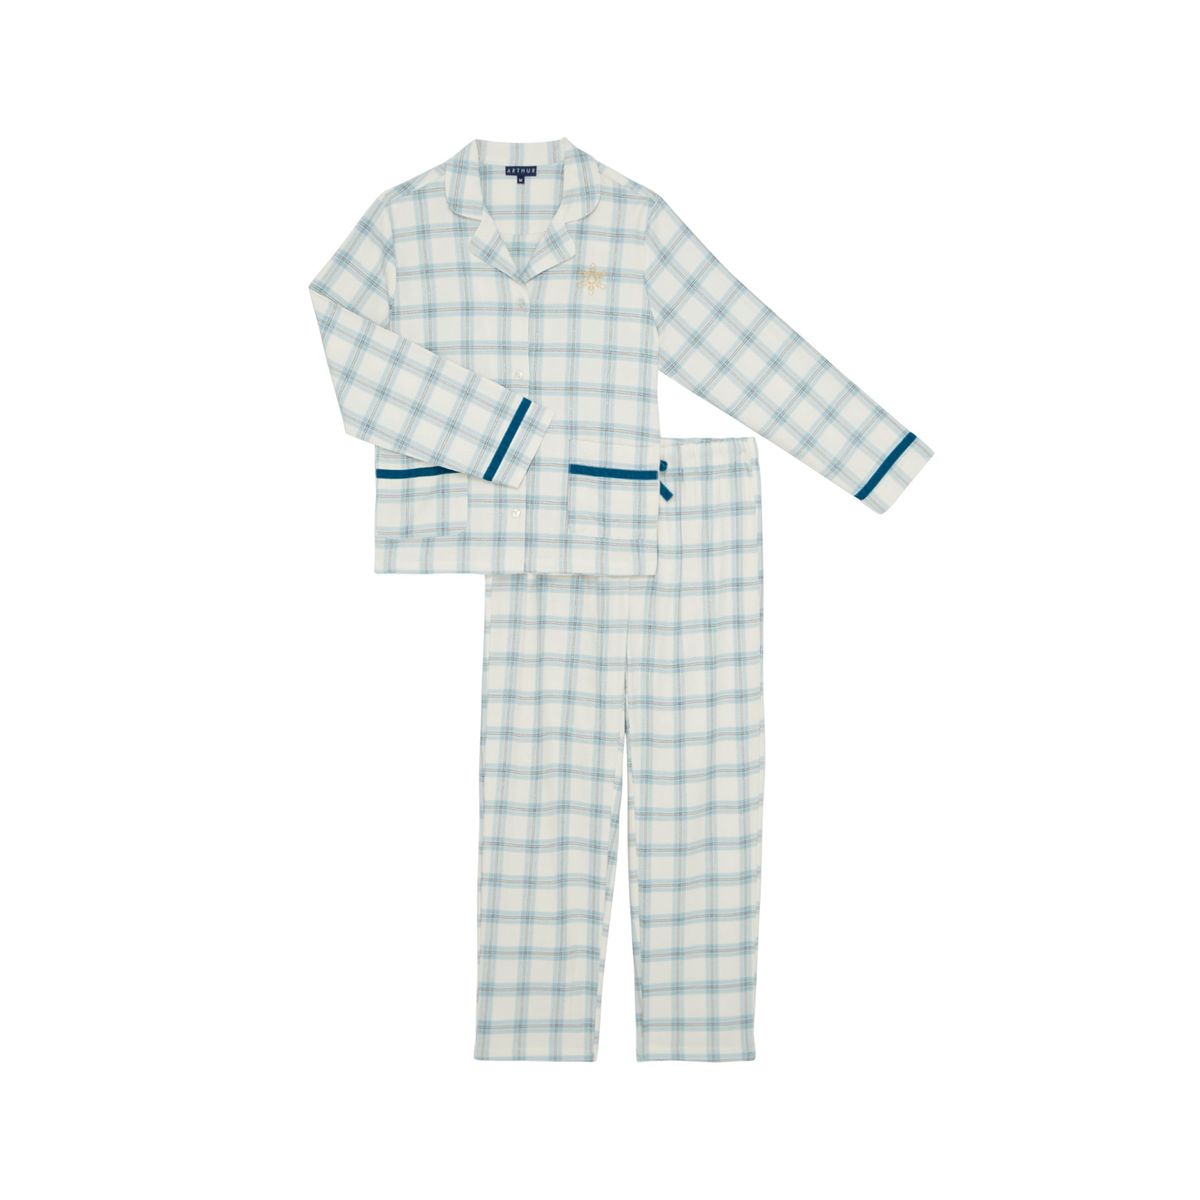 Atelier bricolage des Matins Pyjamas, spécial Droit de l'enfant